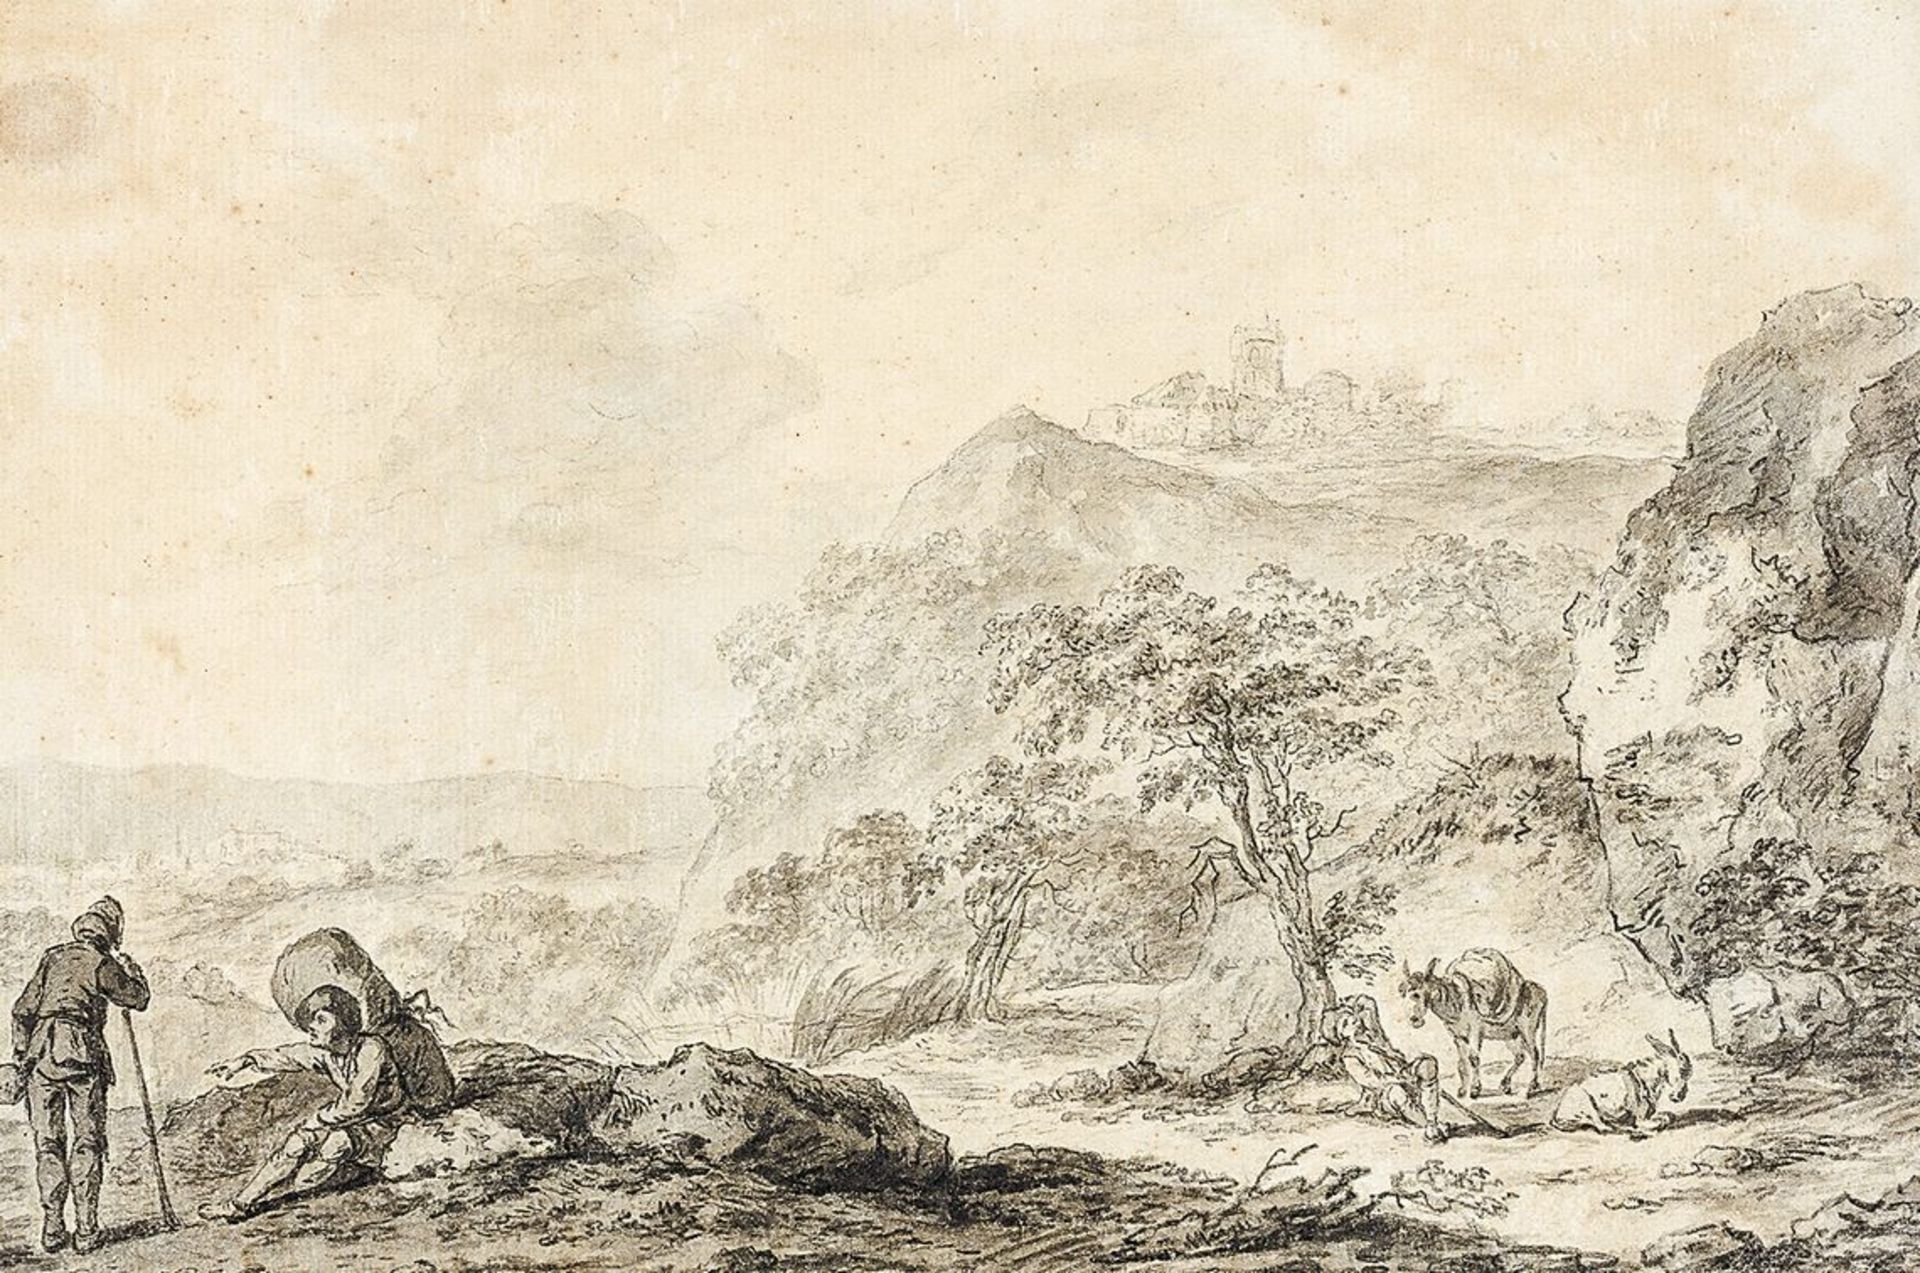 Berchem, Nicolaes Umkreis17. Jh. Tusch-, Bleistiftzeichnung. Weite, felsige Landschaft mit auf einer